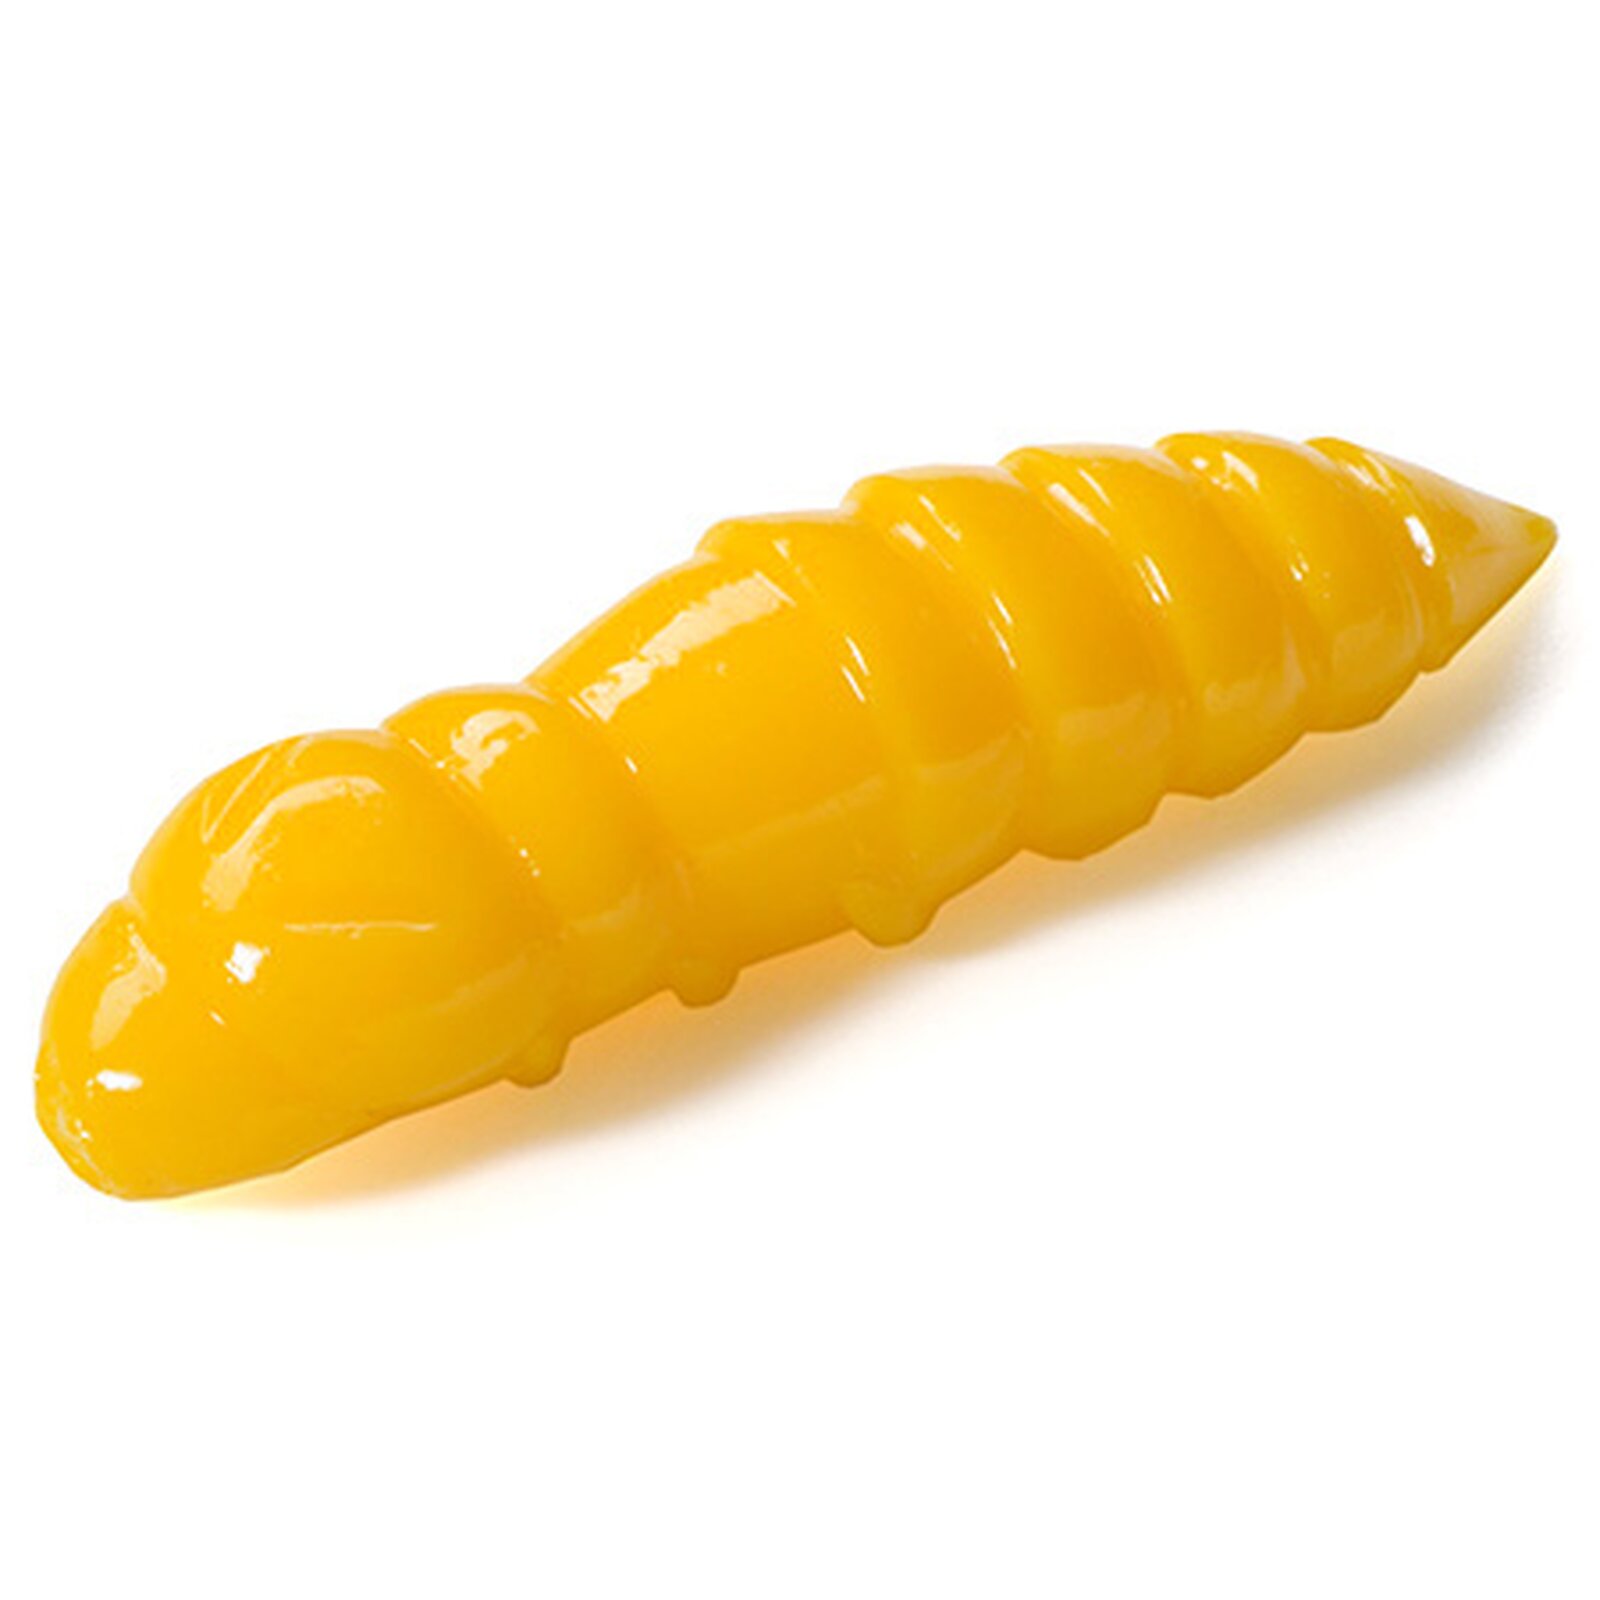 FishUp Pupa #103 - Yellow Knoblauch